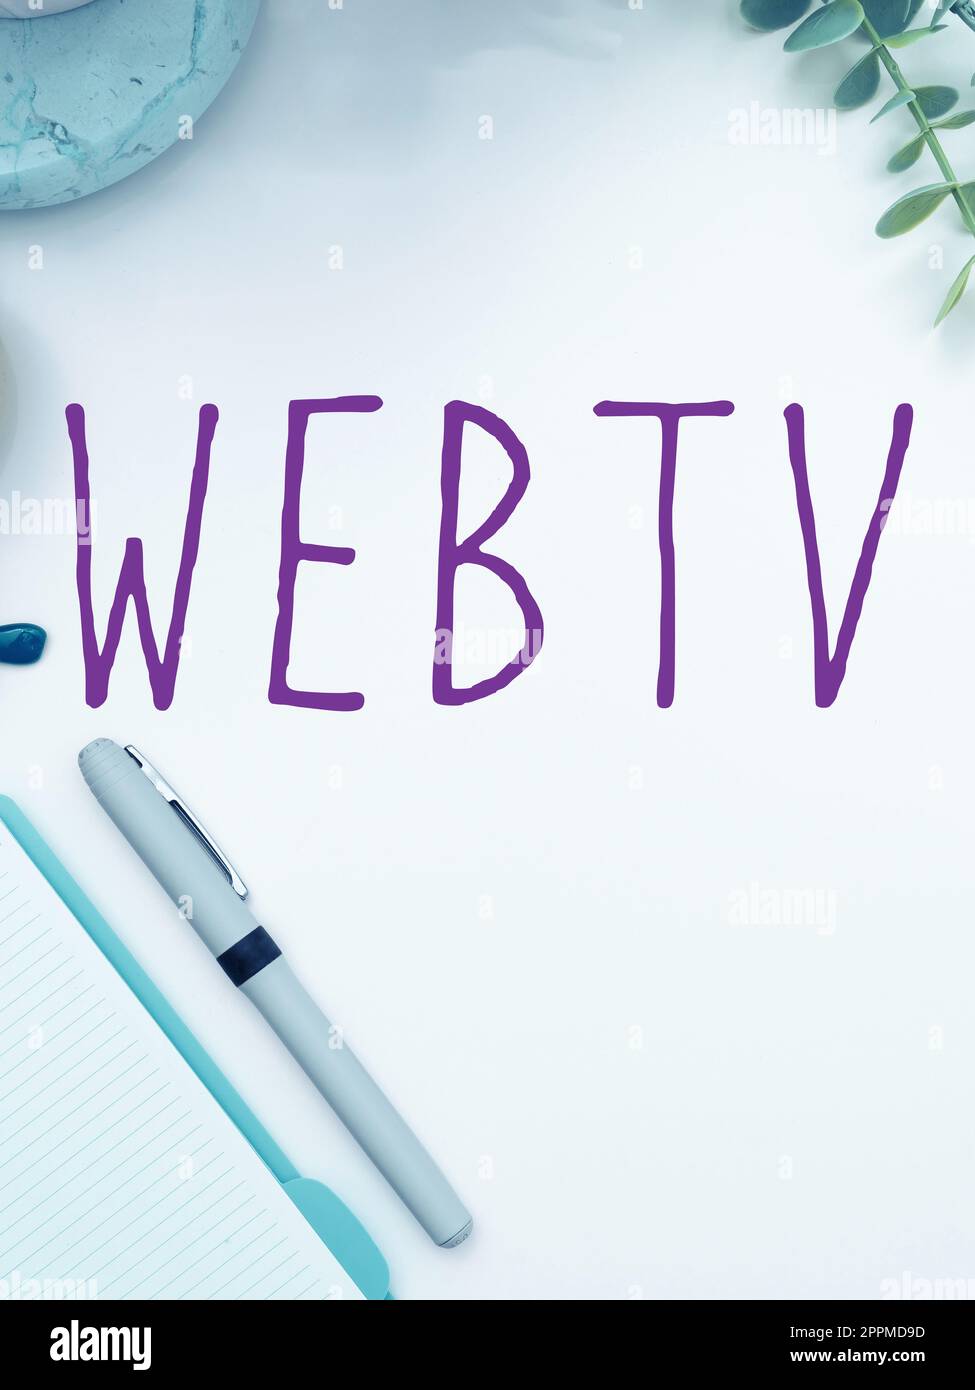 Inspiration mit Schild Webtv. Konzeptionelle Internet-Übertragungsprogramme für Fotos, die sowohl online als auch traditionell produziert werden Stockfoto